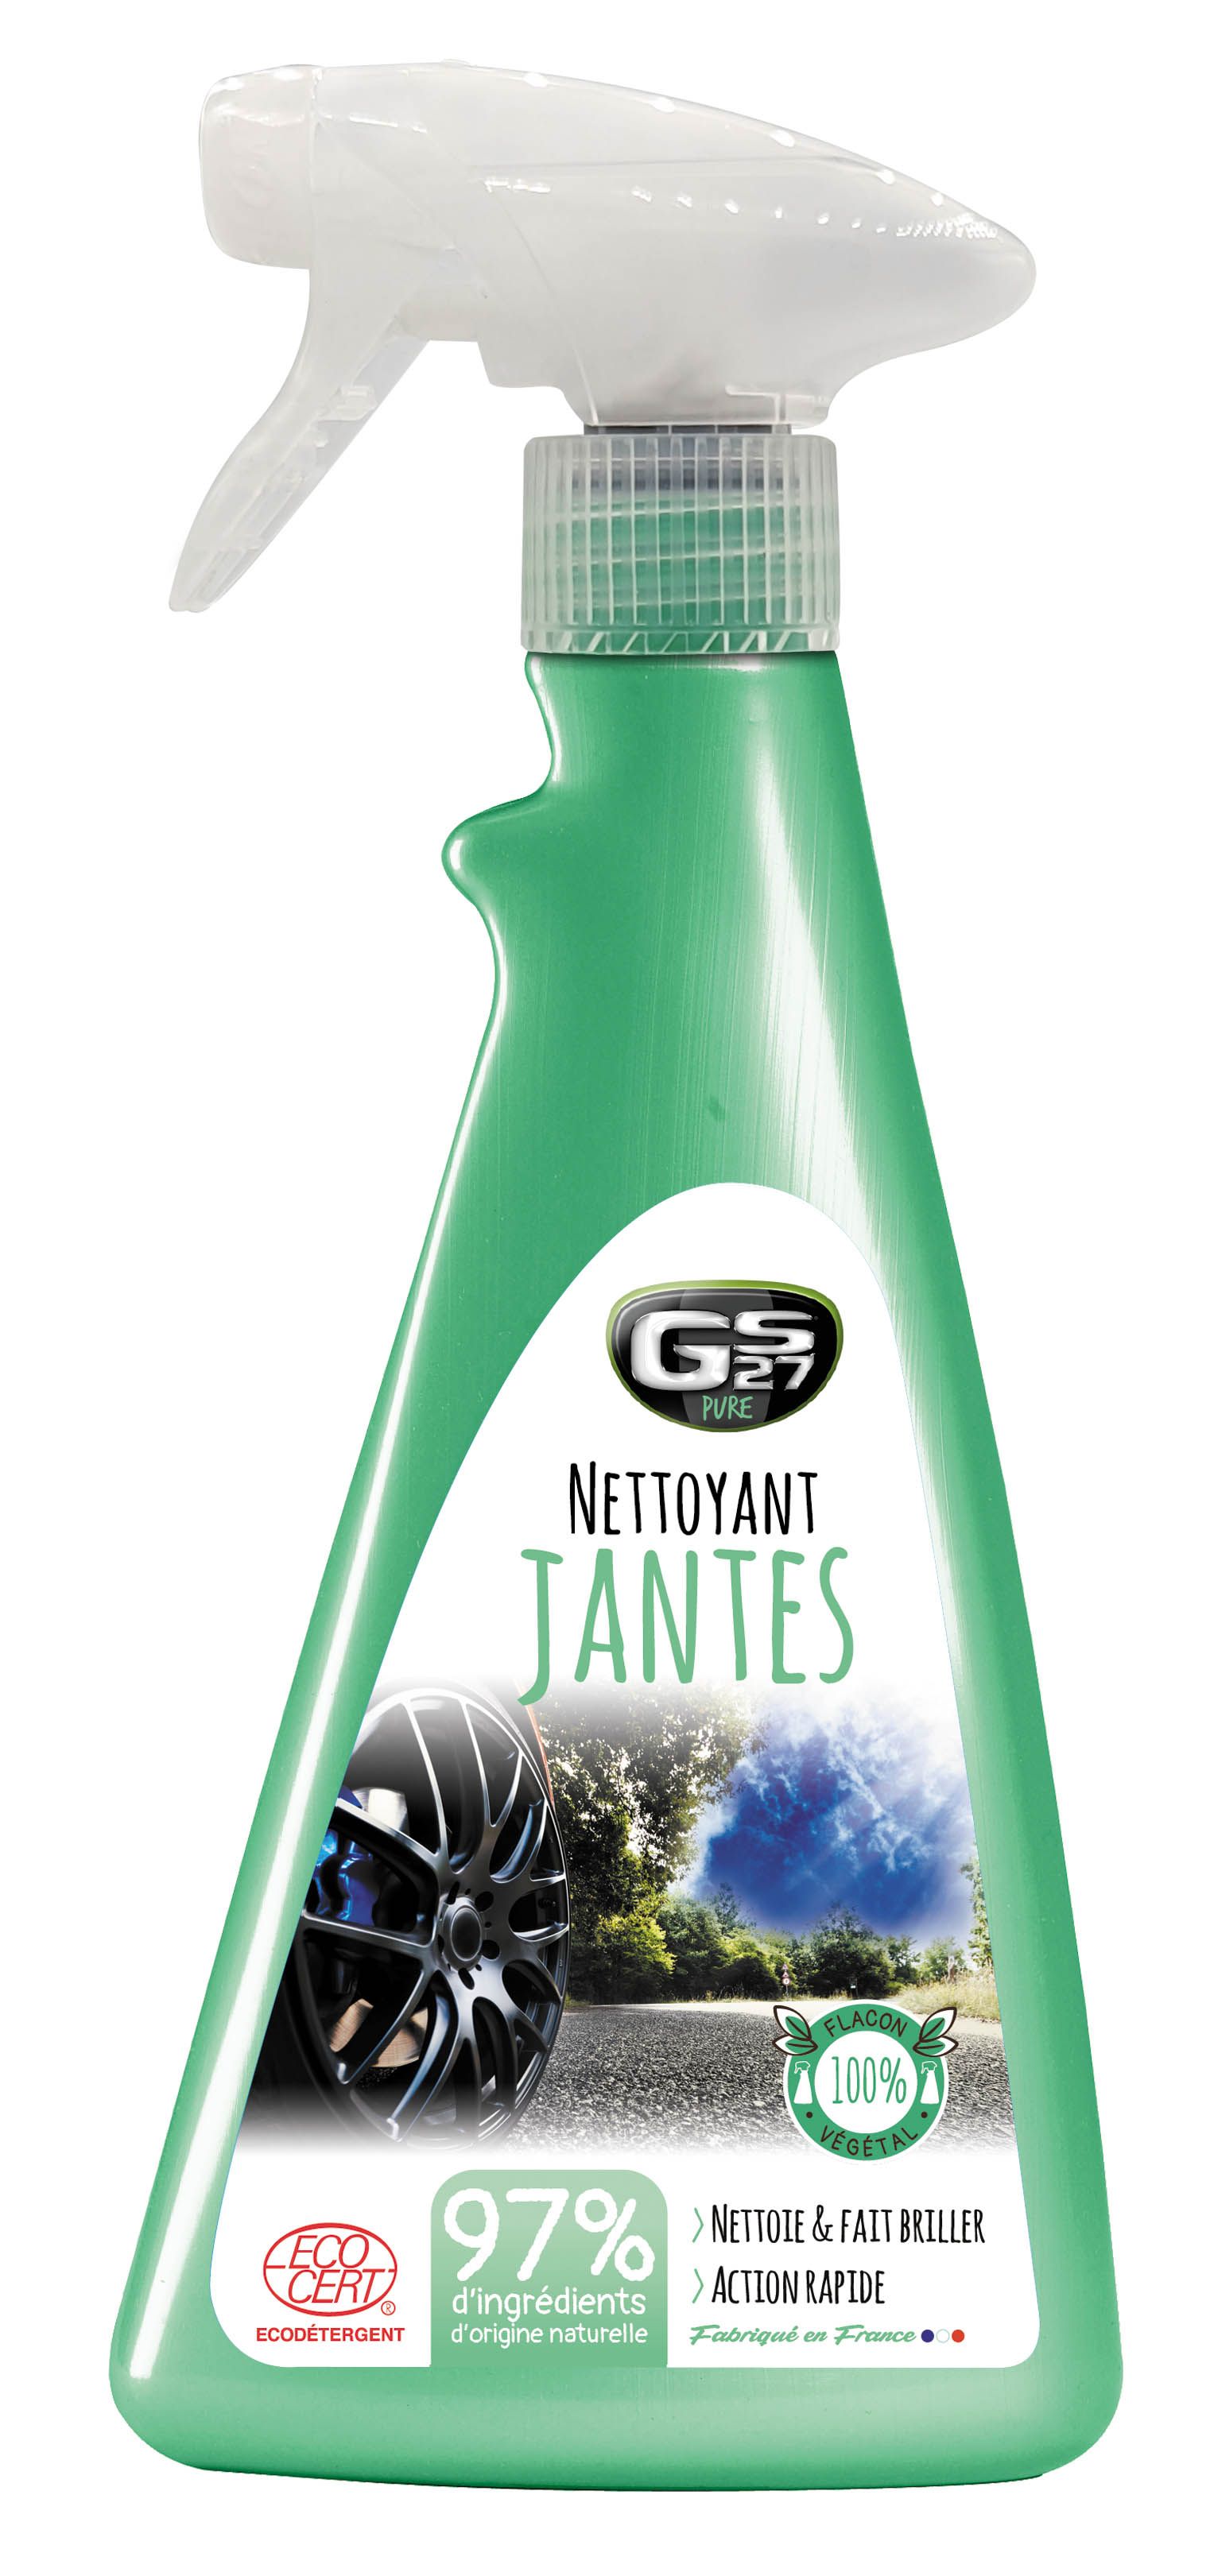 Nettoyant jantes Gel Titanium - GS27 CL120132 - fr